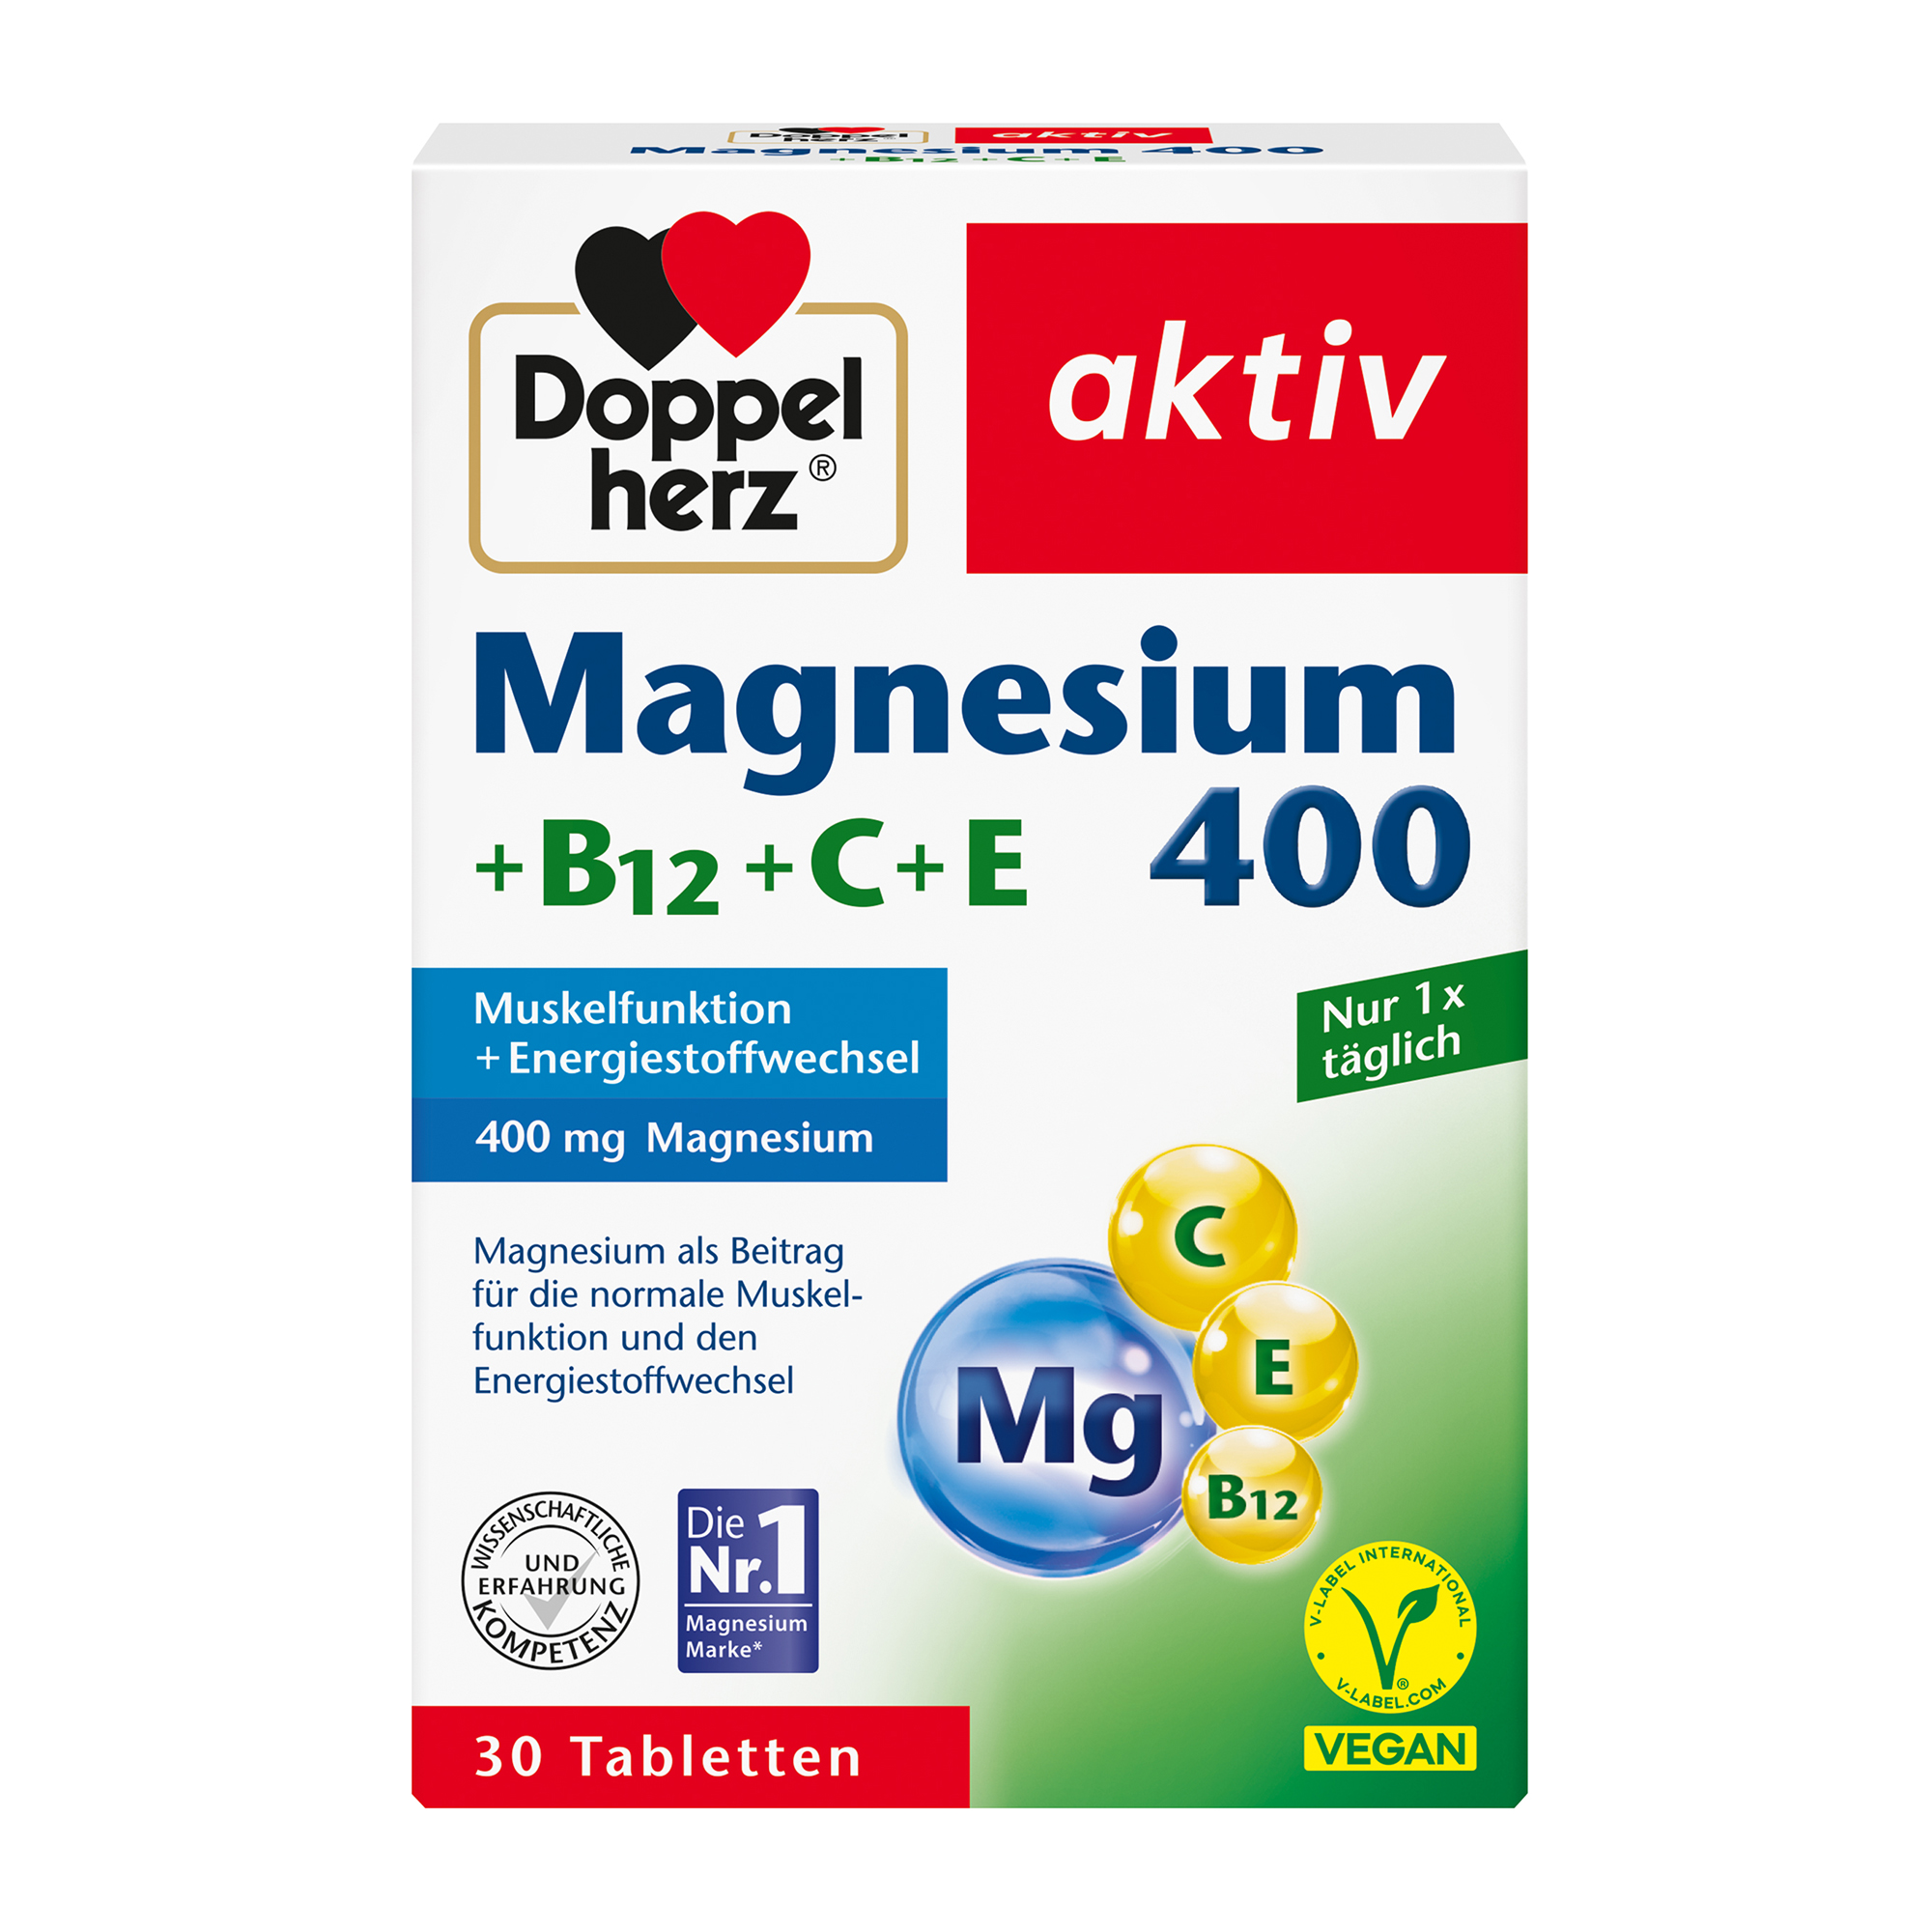 Doppelherz aktiv Magnesium 400 with B12+C+E, 30 Tablets